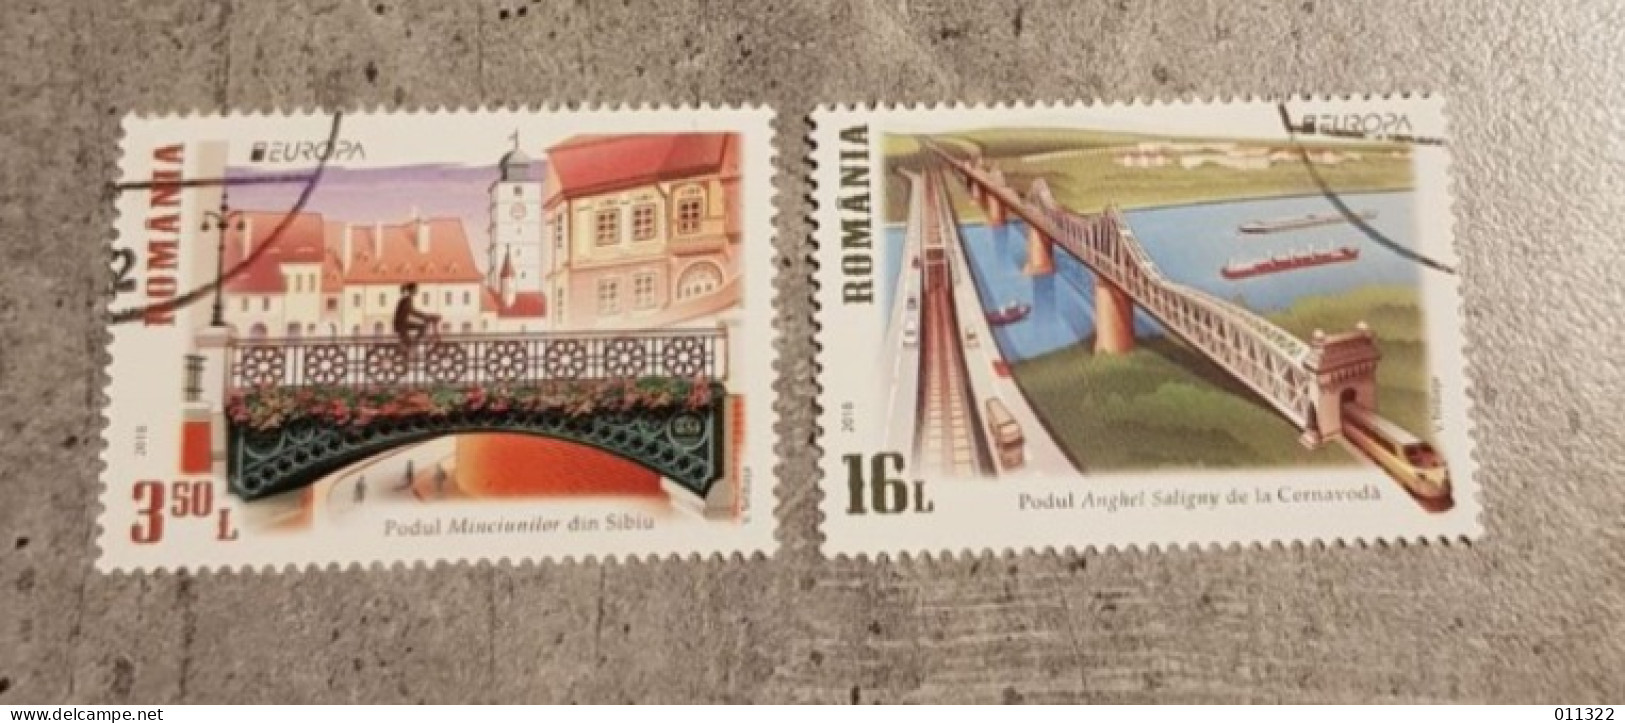 ROMANIA BRIDGES EUROPA SET USED - Used Stamps